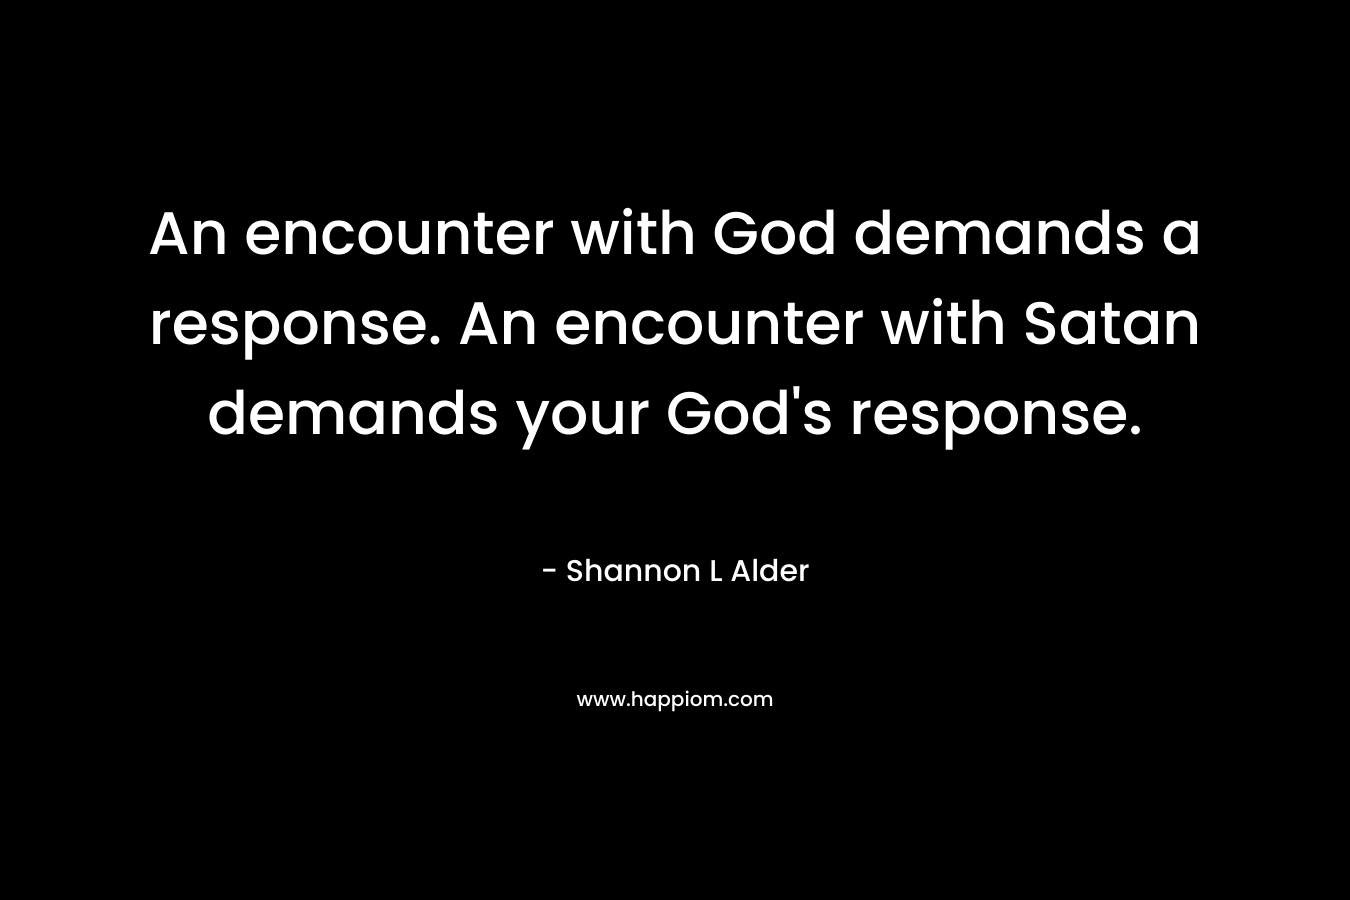 An encounter with God demands a response. An encounter with Satan demands your God's response.